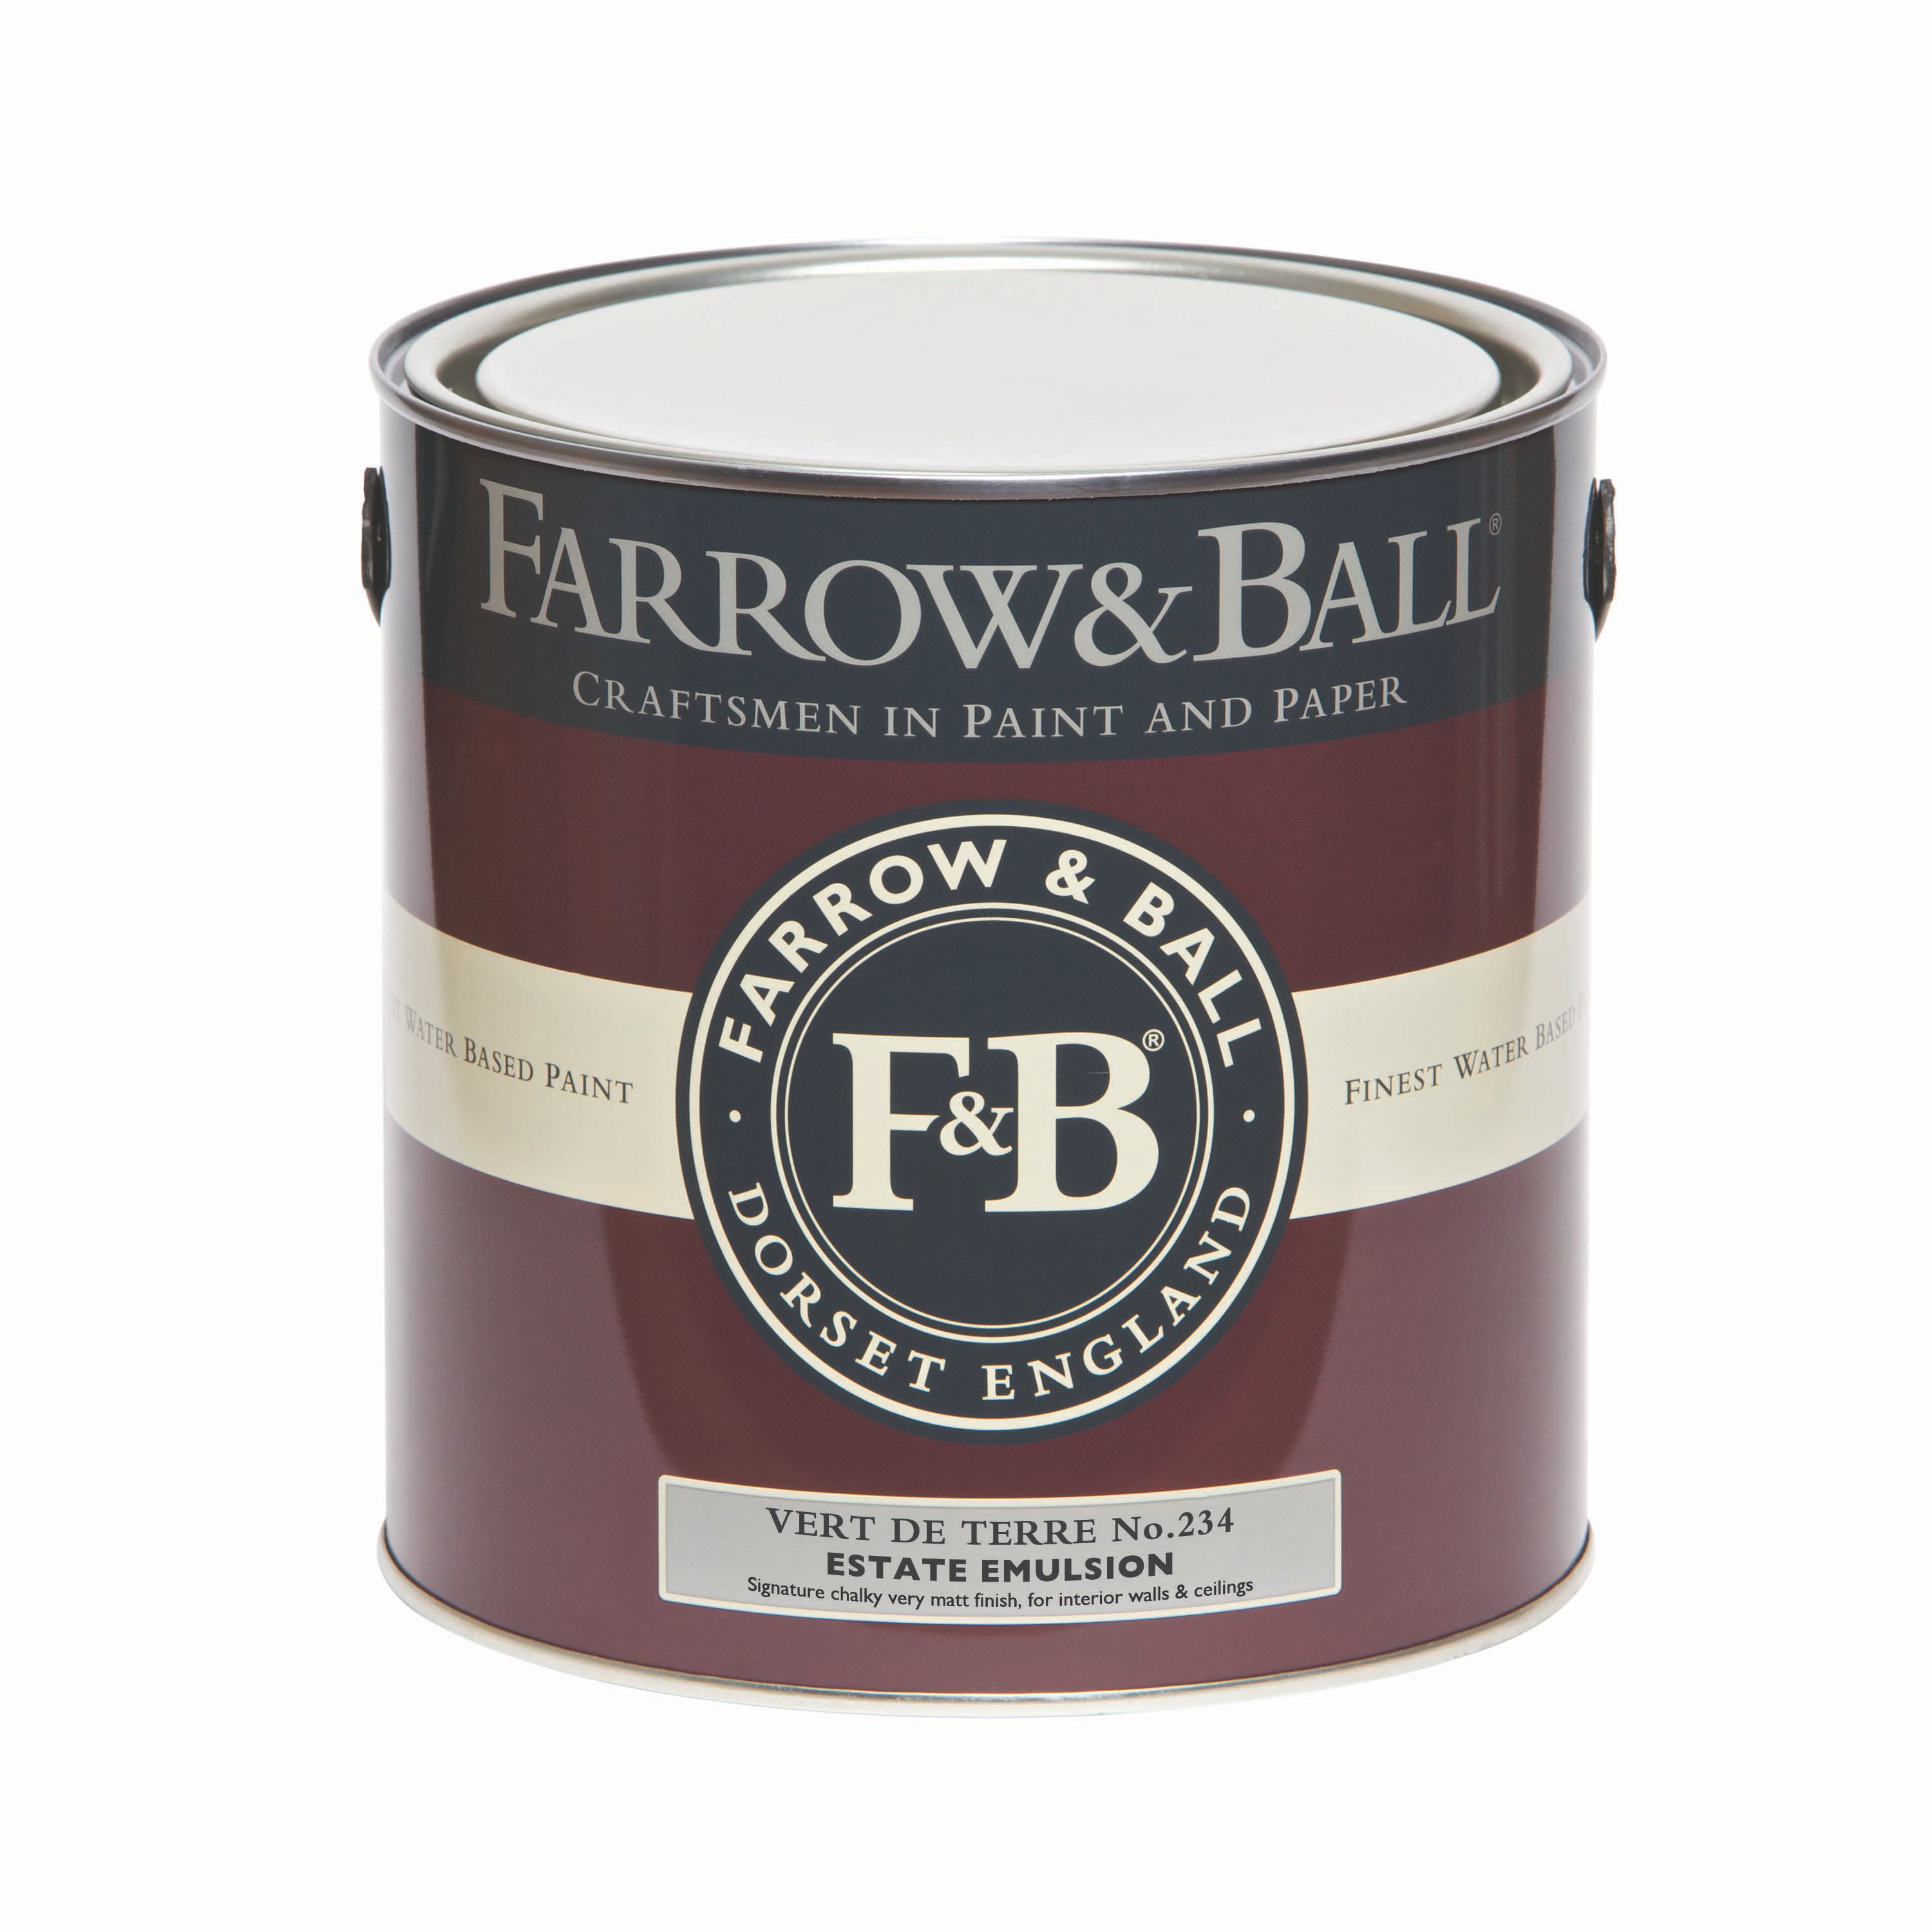 Farrow & Ball Estate Vert de terre Matt Emulsion paint, 2.5L